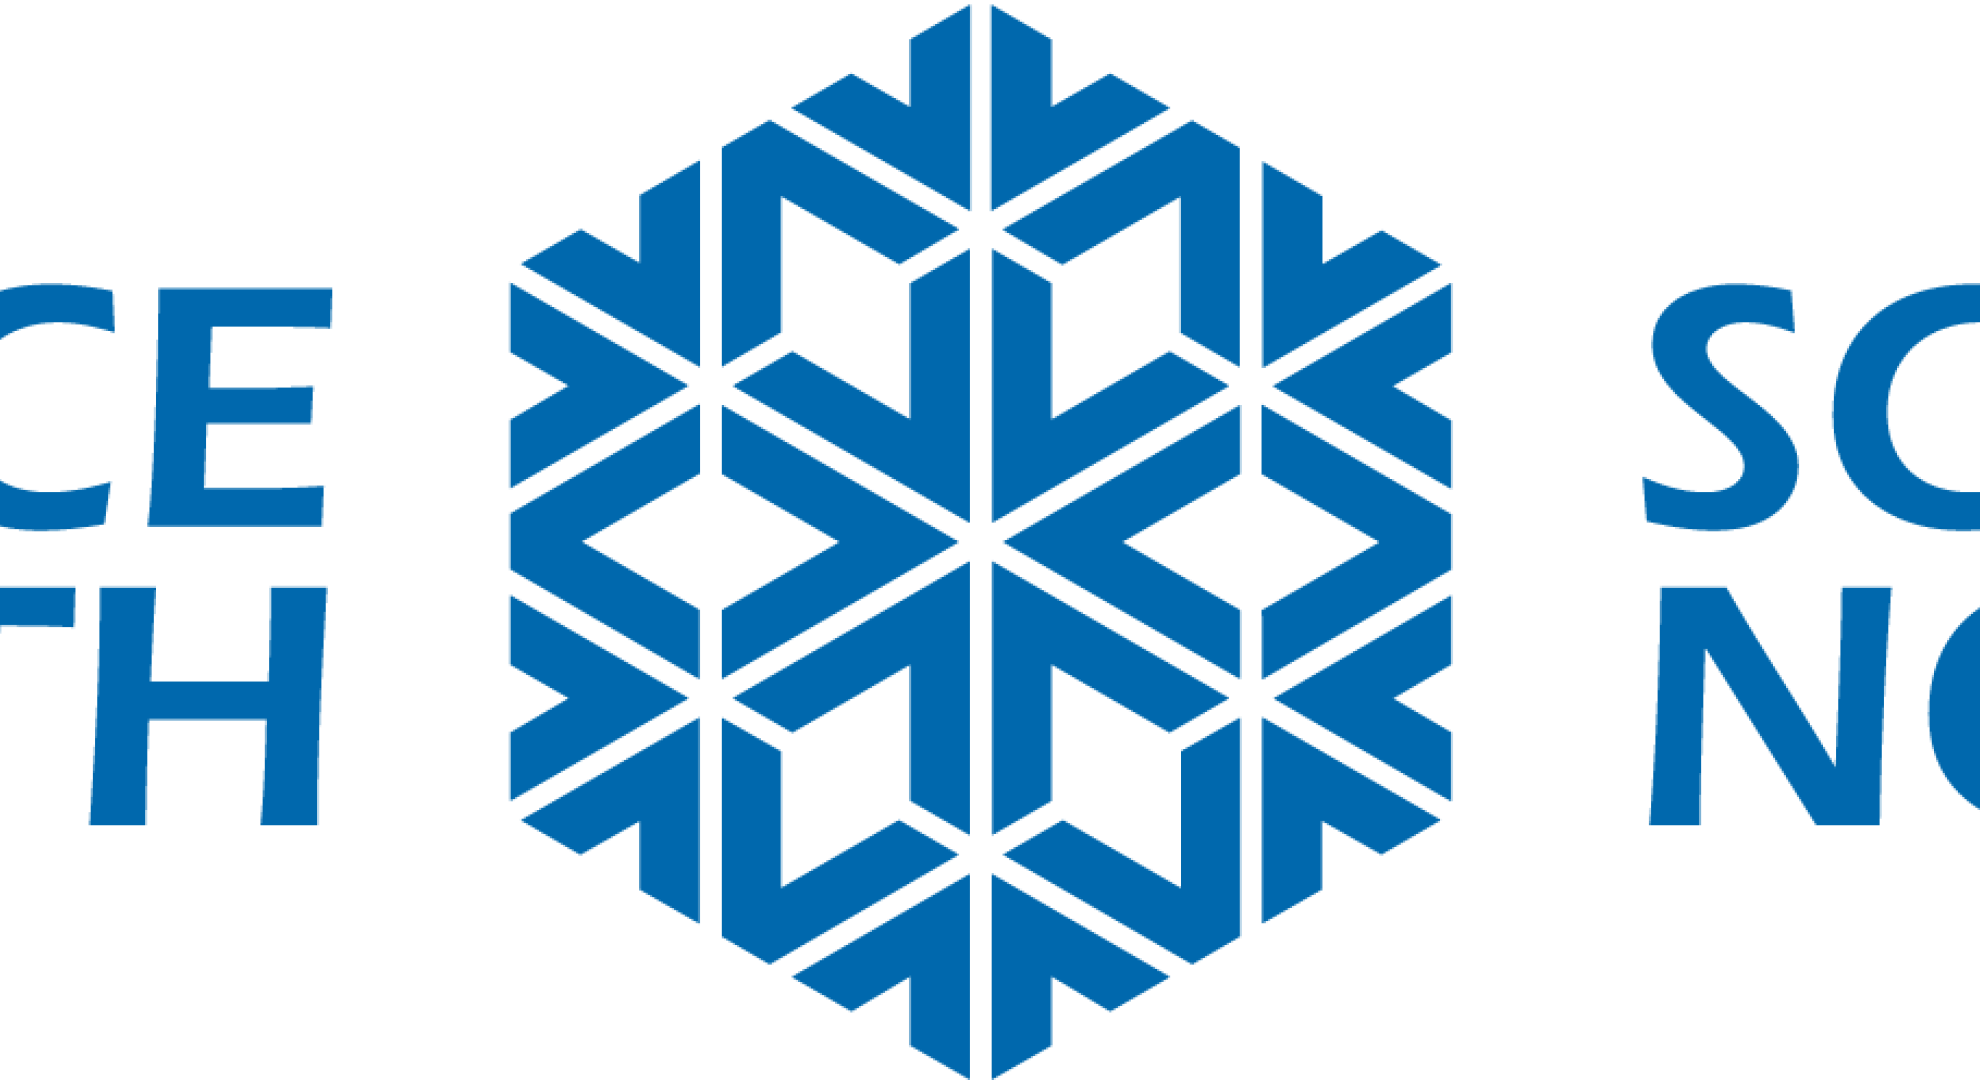 Science North logo